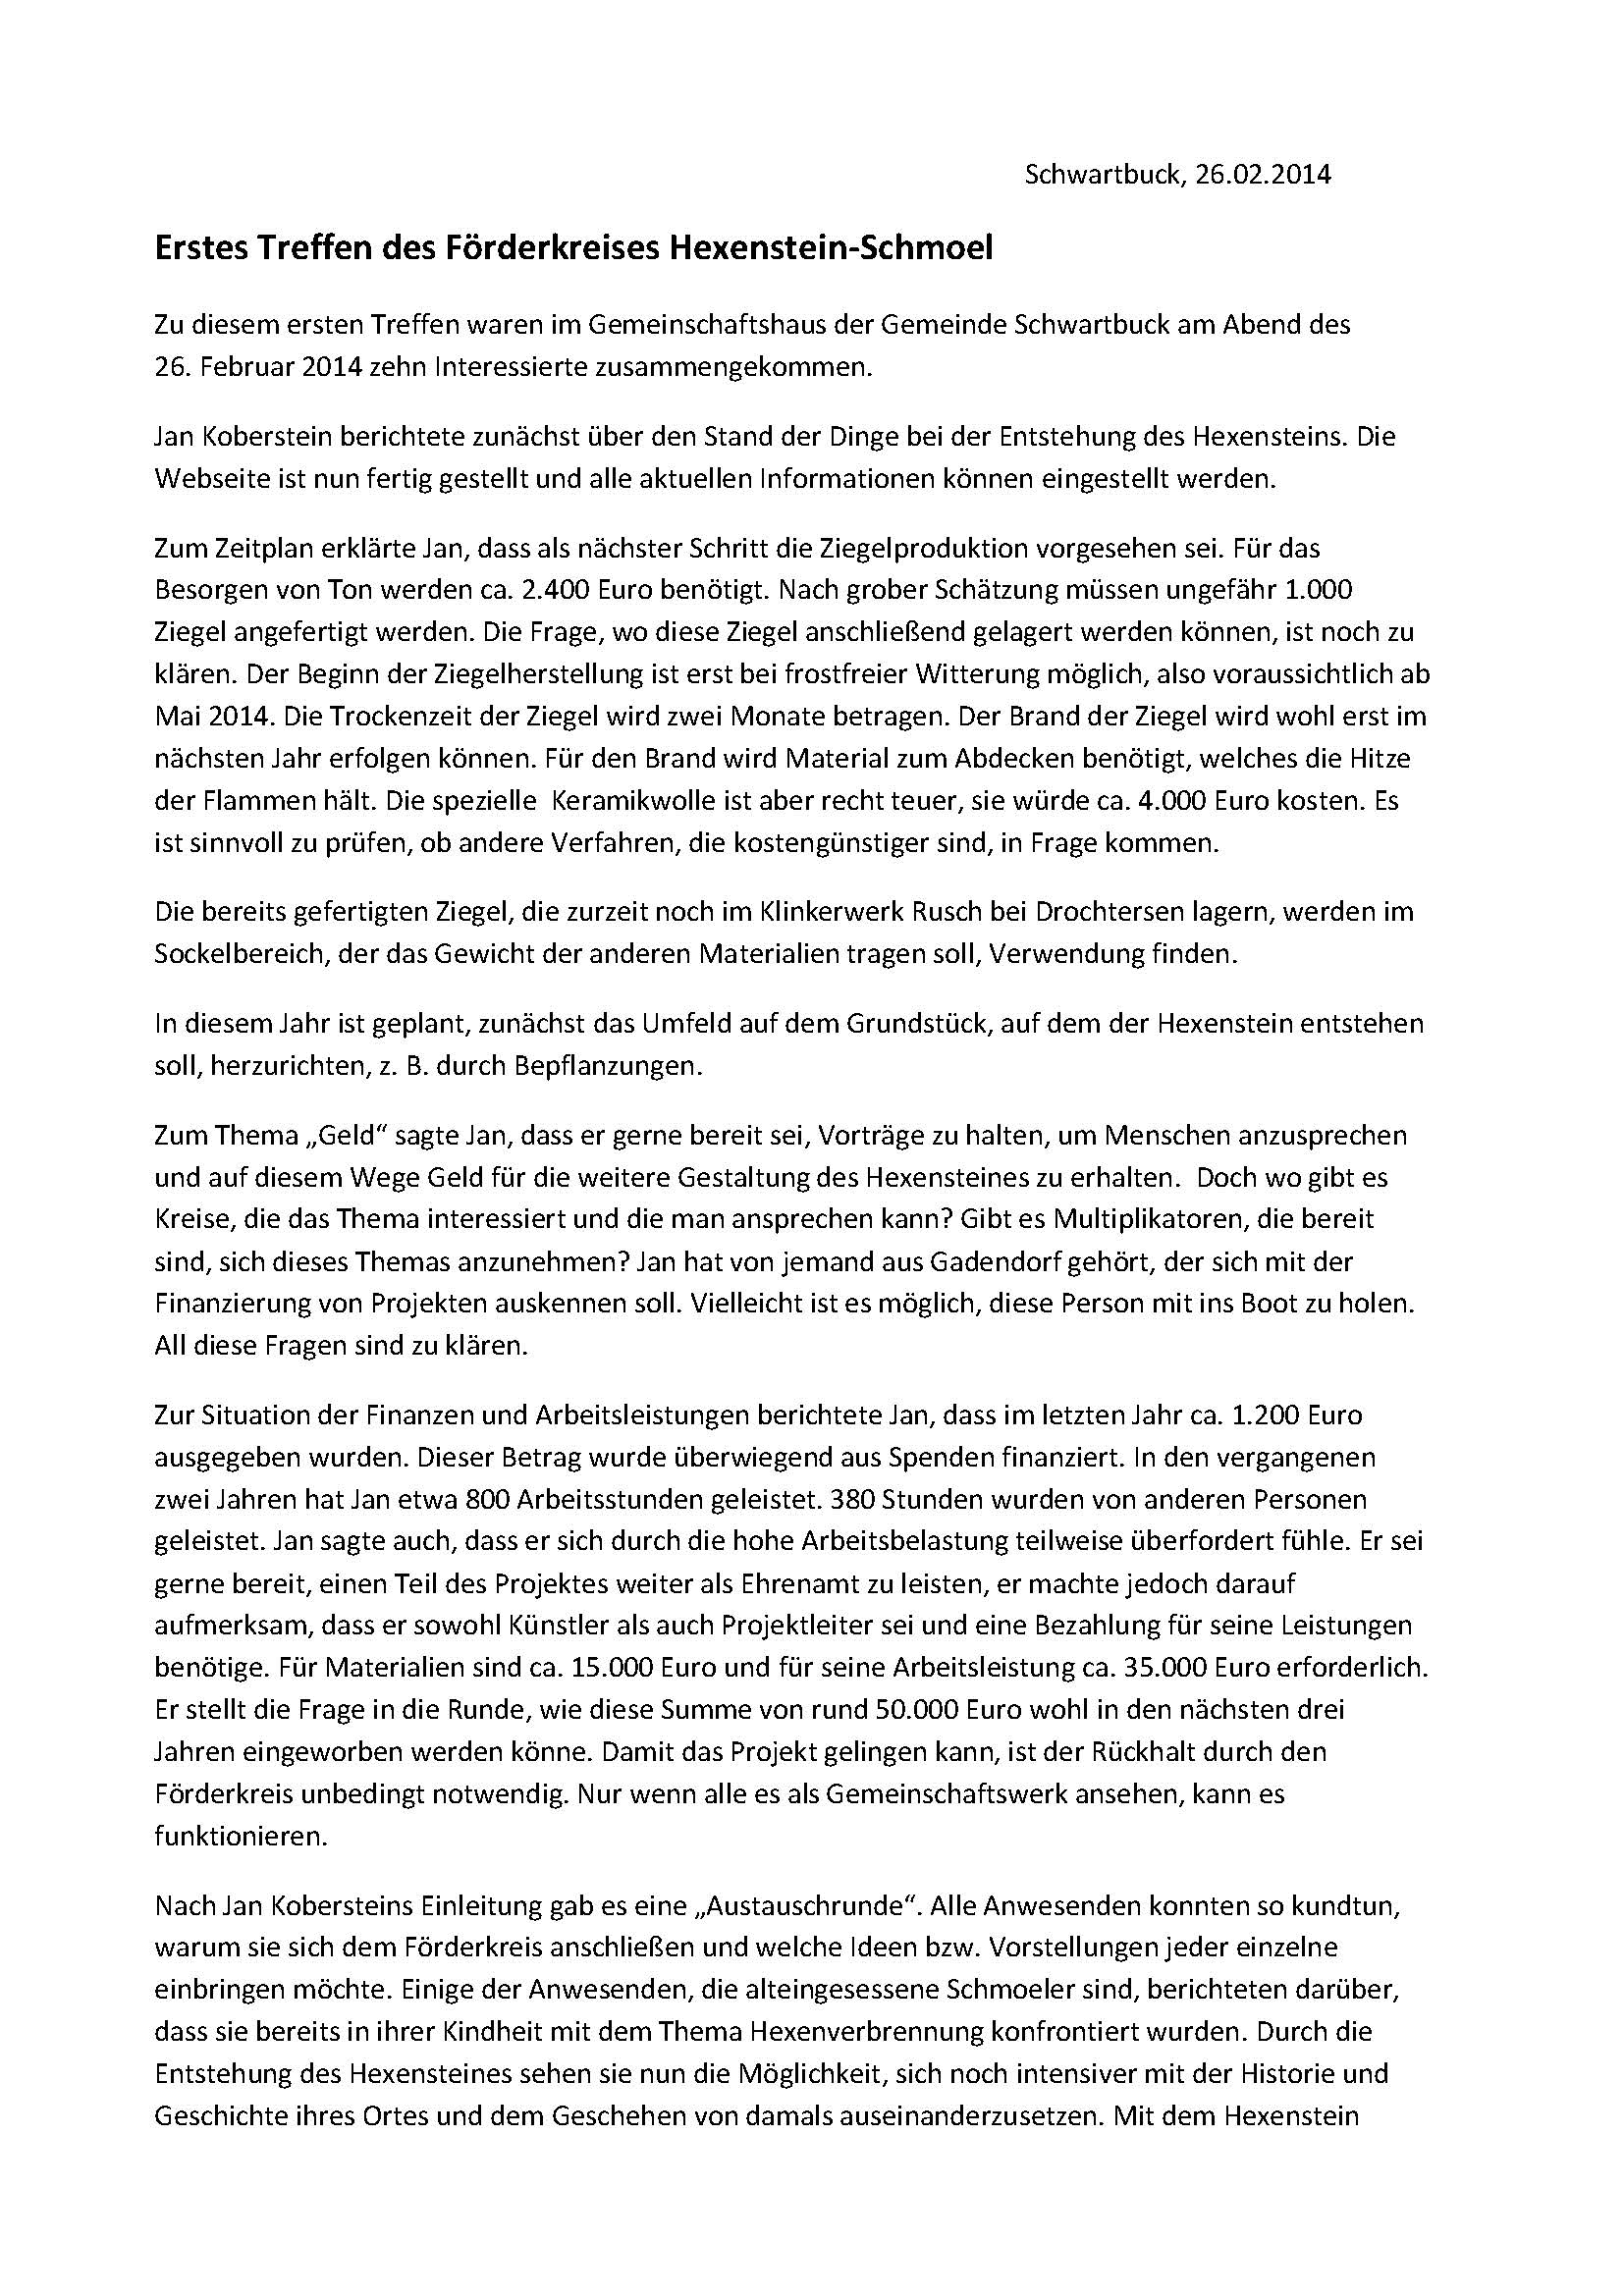 Protokoll Foerderkreis-Treffen Hexenstein 26 02 2014 Seite 1